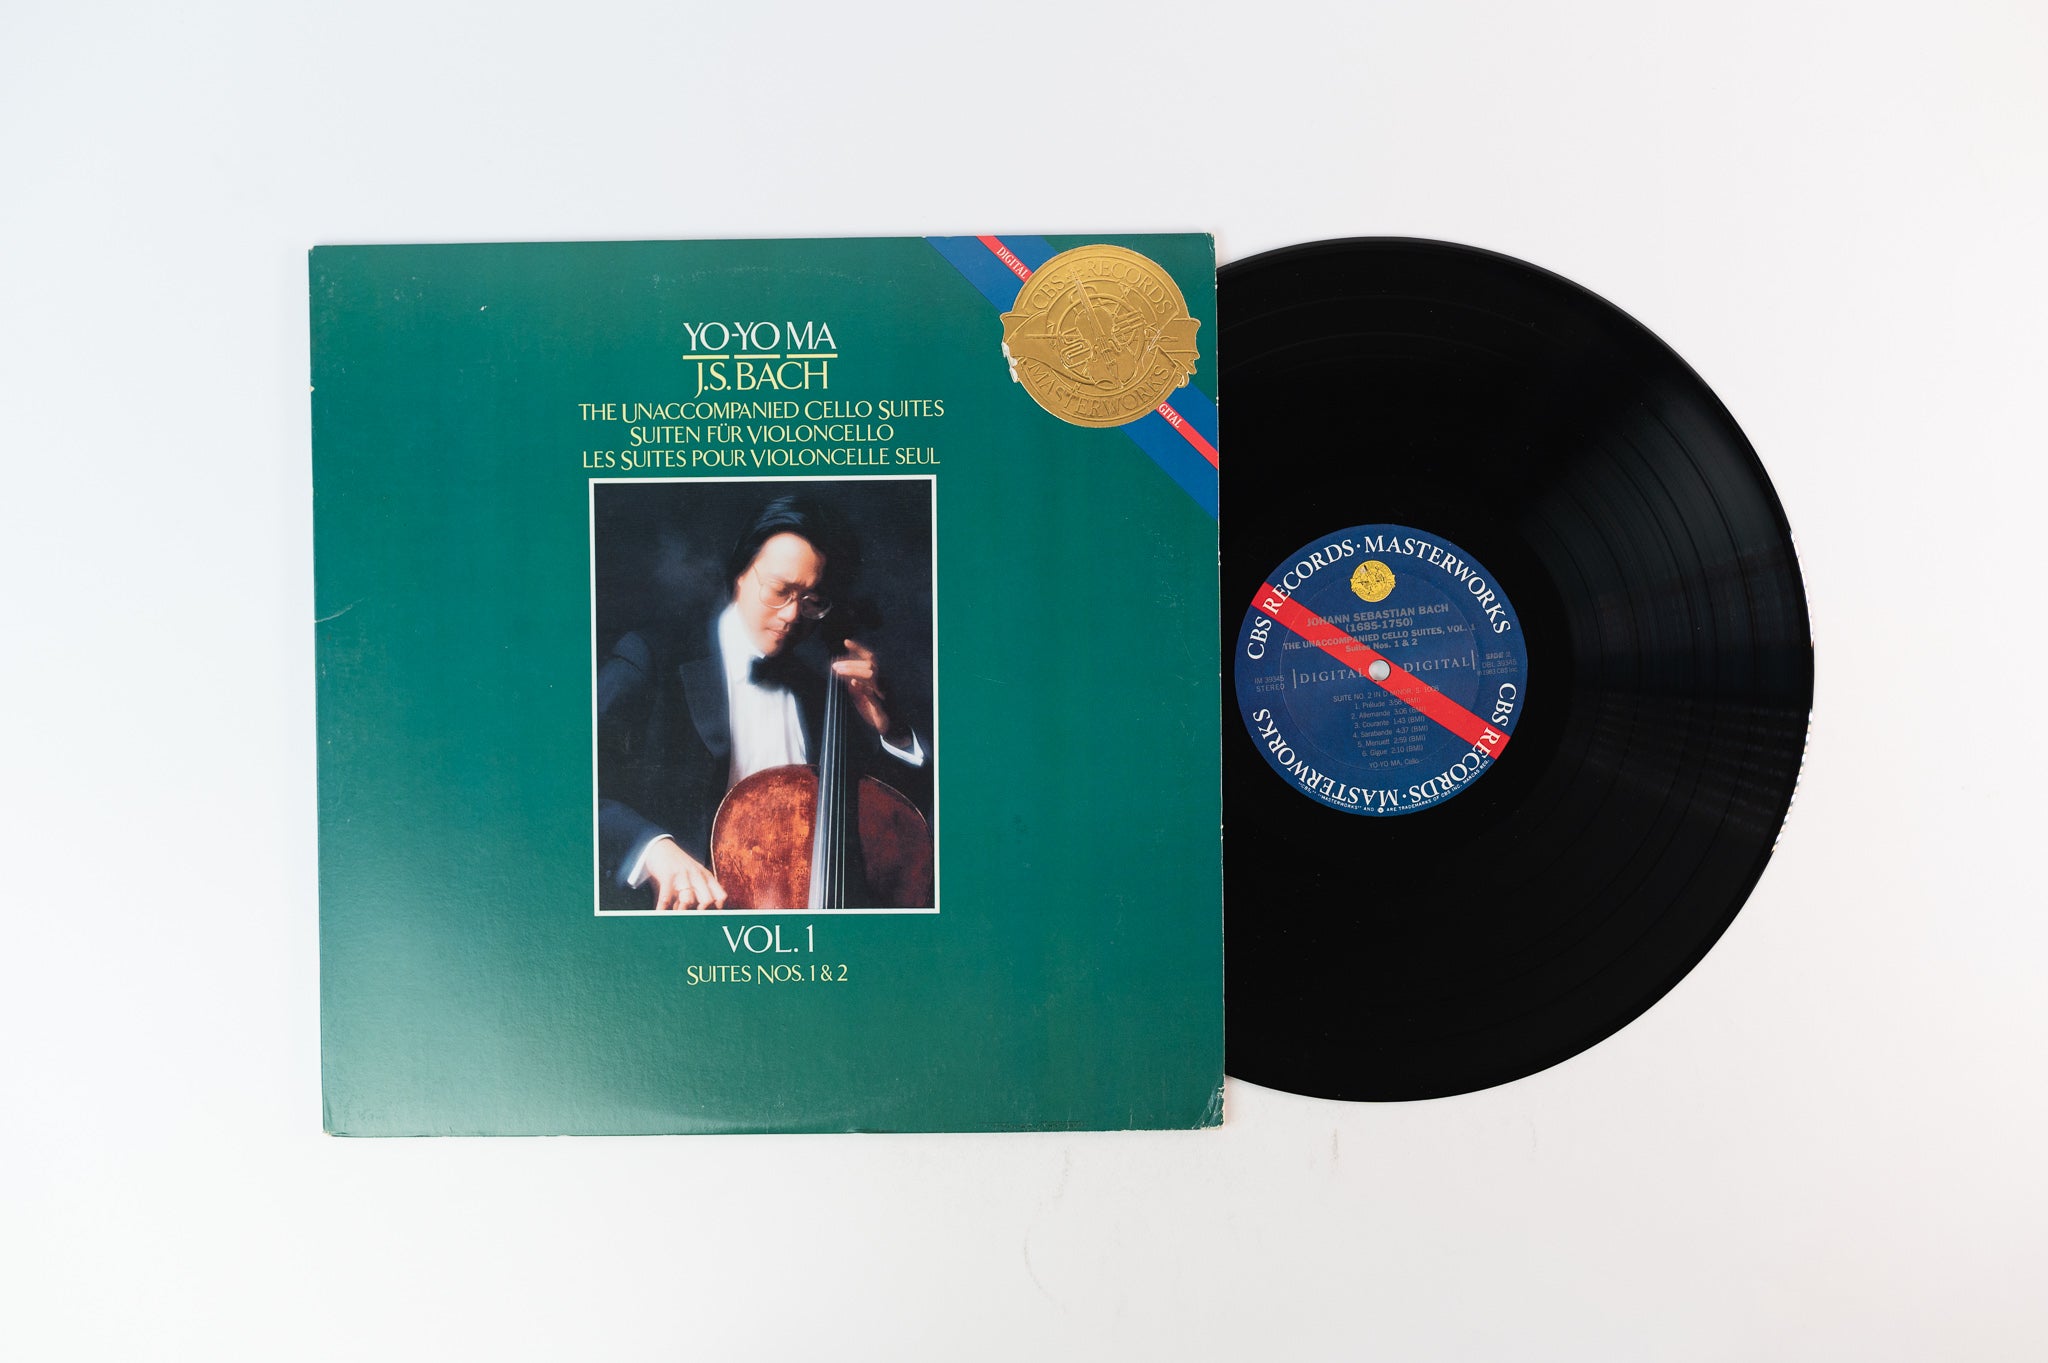 Yo-Yo Ma, J.S. Bach - The Unaccompanied Cello Suites / Suiten Für Violoncello / Les Suites Pour Violoncelle Seul - Vol. 1, Suites Nos. 1 & 2 on CBS Masterworkas